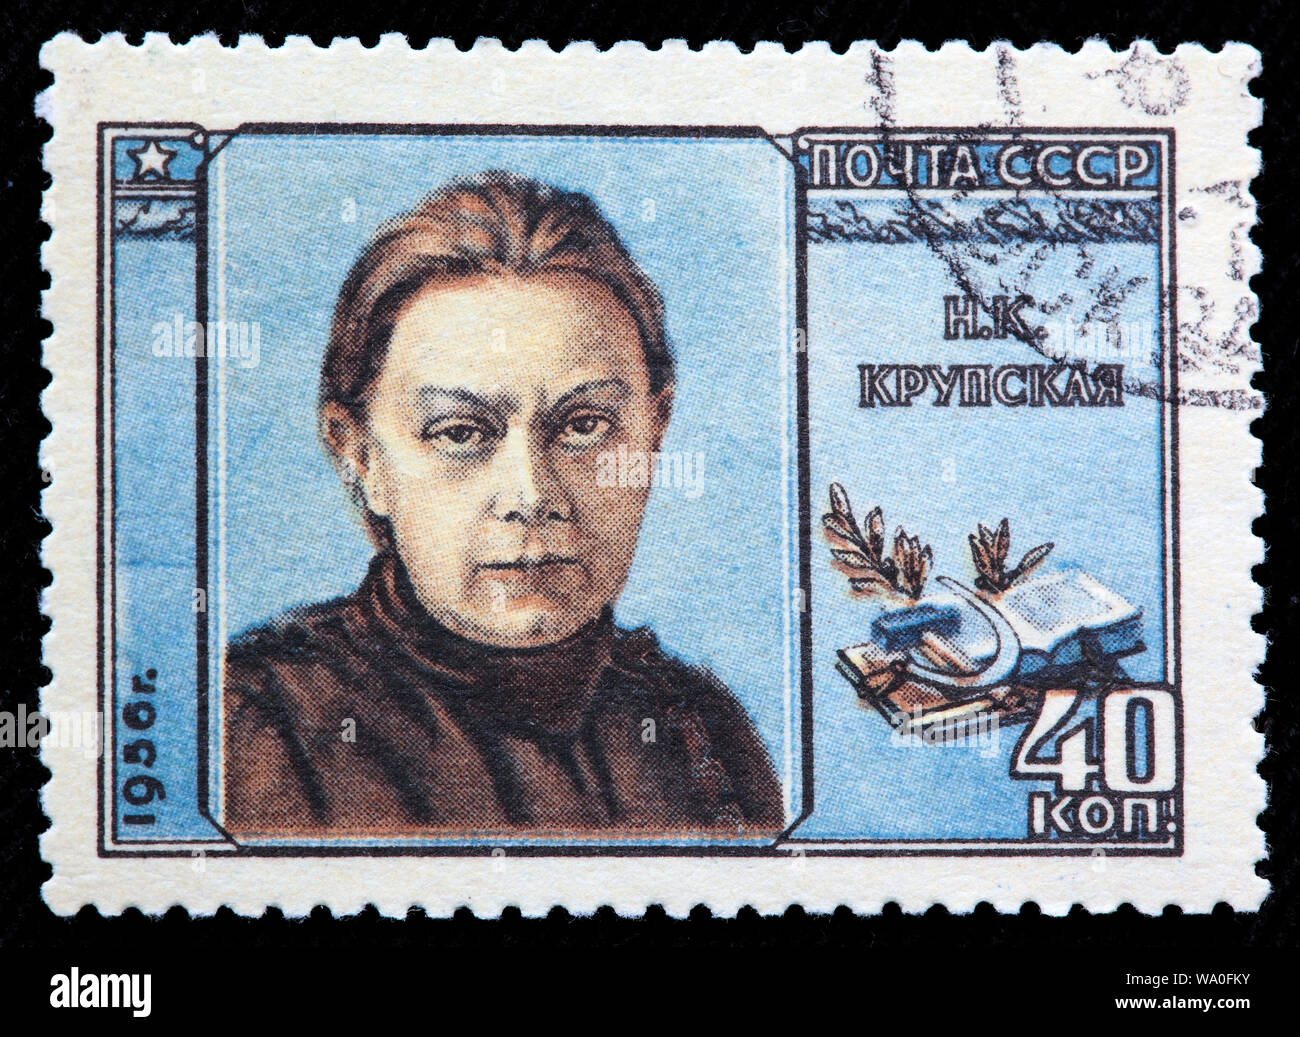 Nadeschda Krupskaja (1869-1939), Ehefrau von Wladimir Lenin, Briefmarke, Russland, UDSSR, 1956 Stockfoto